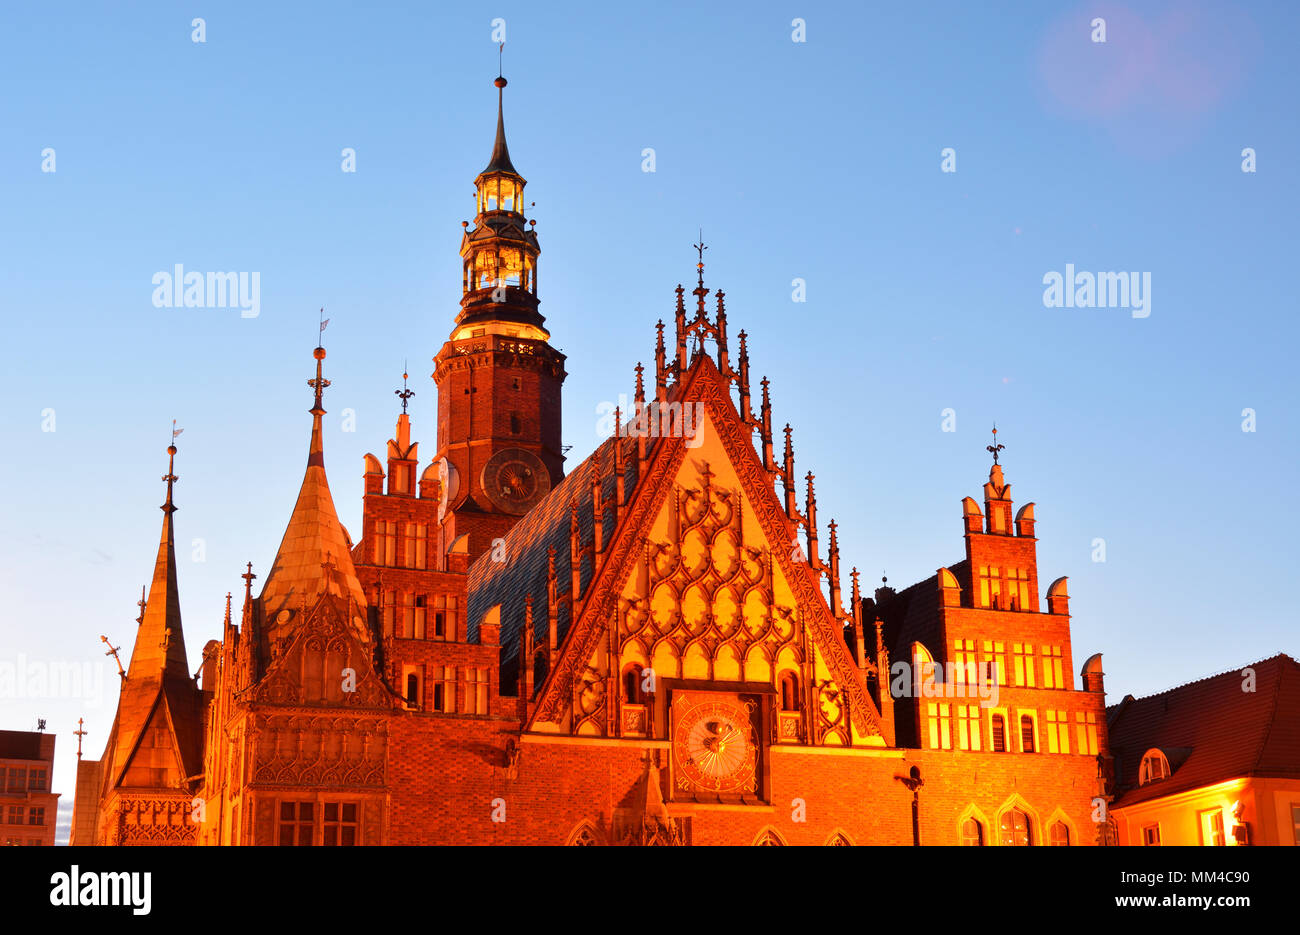 Das gotische Alte Rathaus (Stary Ratusz) am Rynek (Marktplatz). Dieses mittelalterlichen Marktplatz ist einer der größten in Europa. Wroclaw, Polen Stockfoto